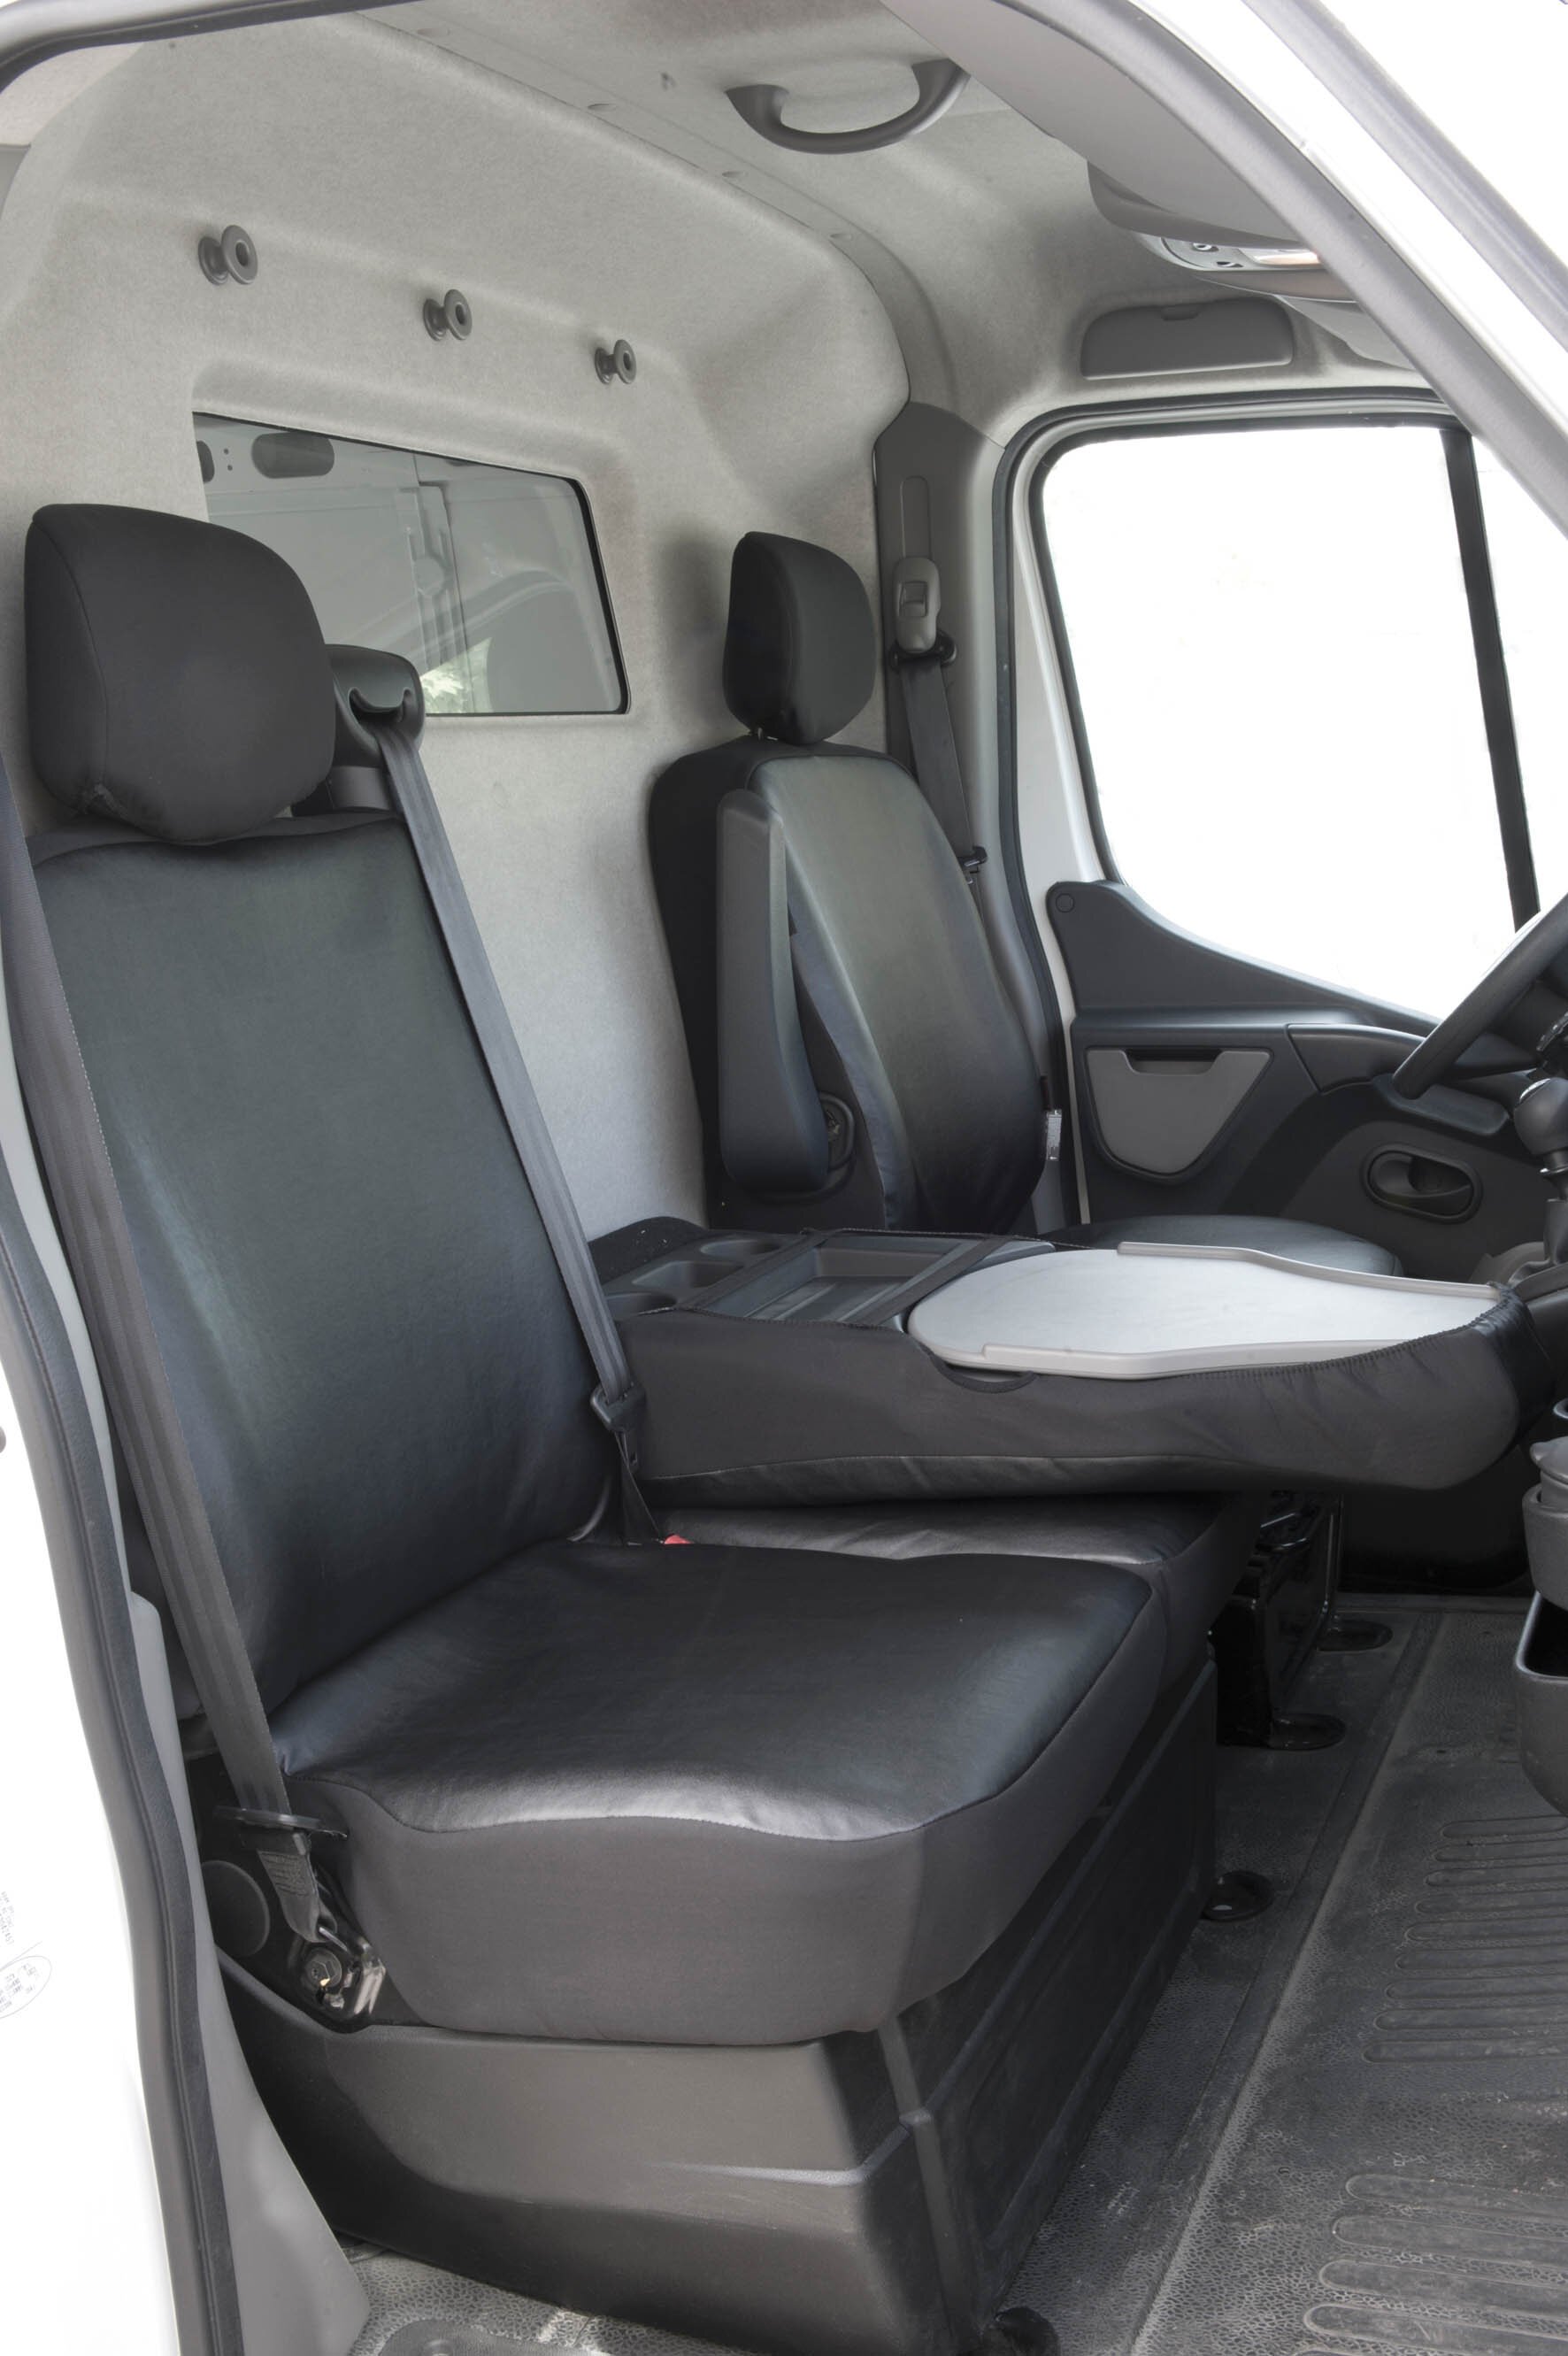 Autostoelhoes Transporter Fit Kunstleer antraciet geschikt voor Opel Movano, Renault Master, Nissan NV400, Einzelbank & 2 afzonderlijke stoelhoezen voor